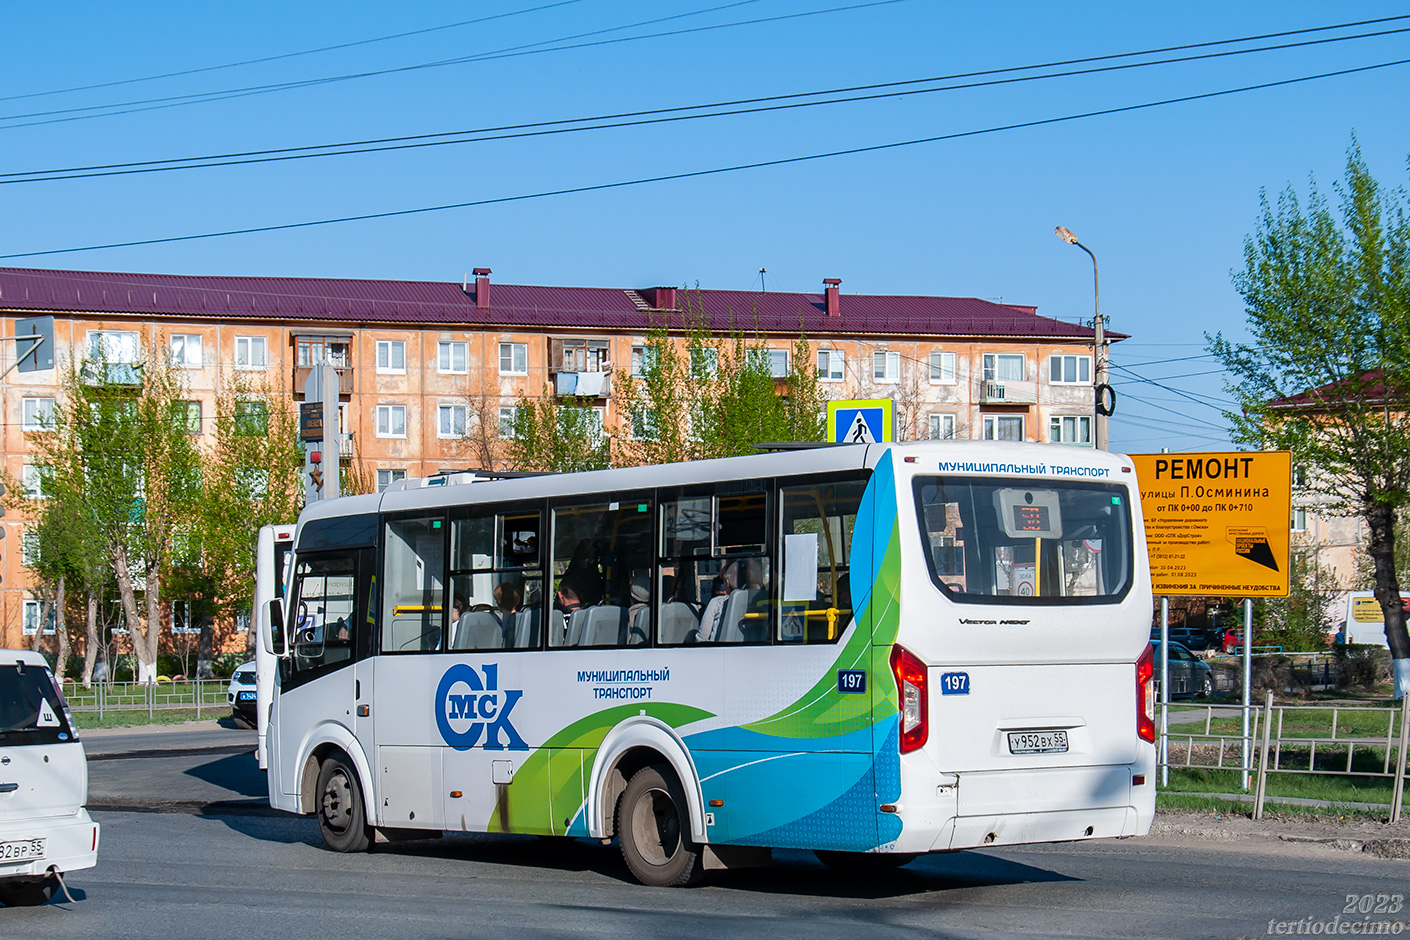 Omsk region, PAZ-320435-04 "Vector Next" № 197